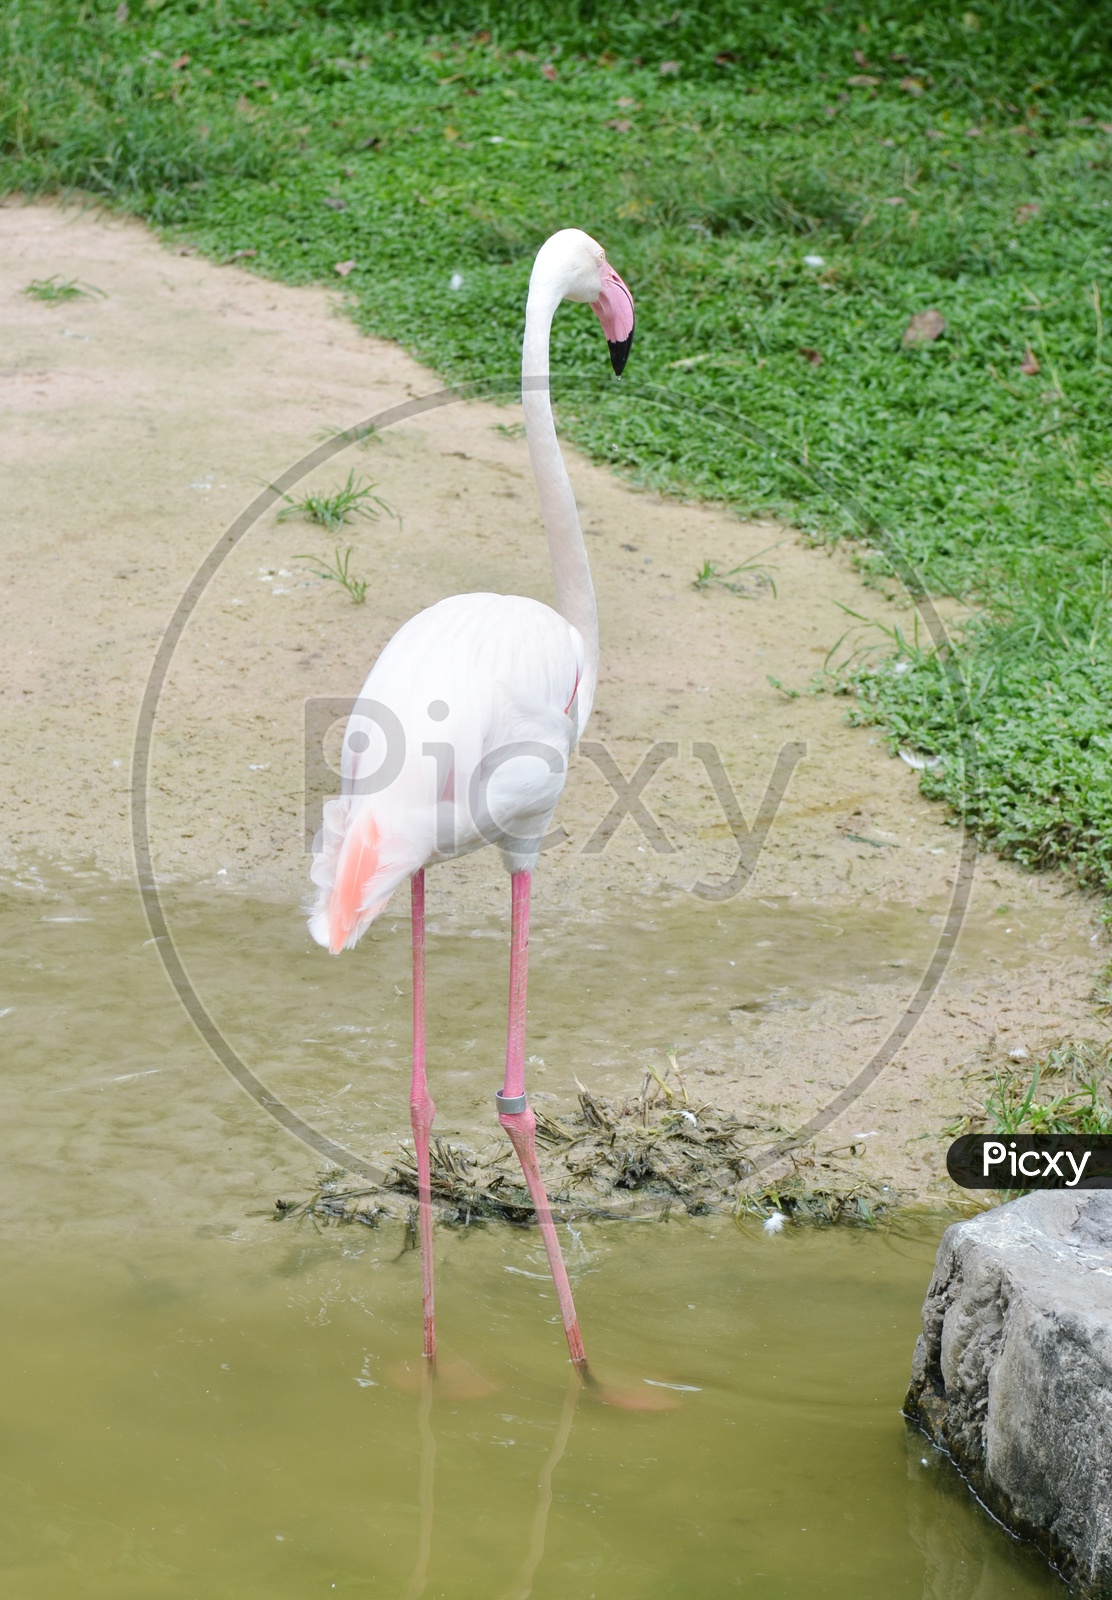 Flamingo At a Lake